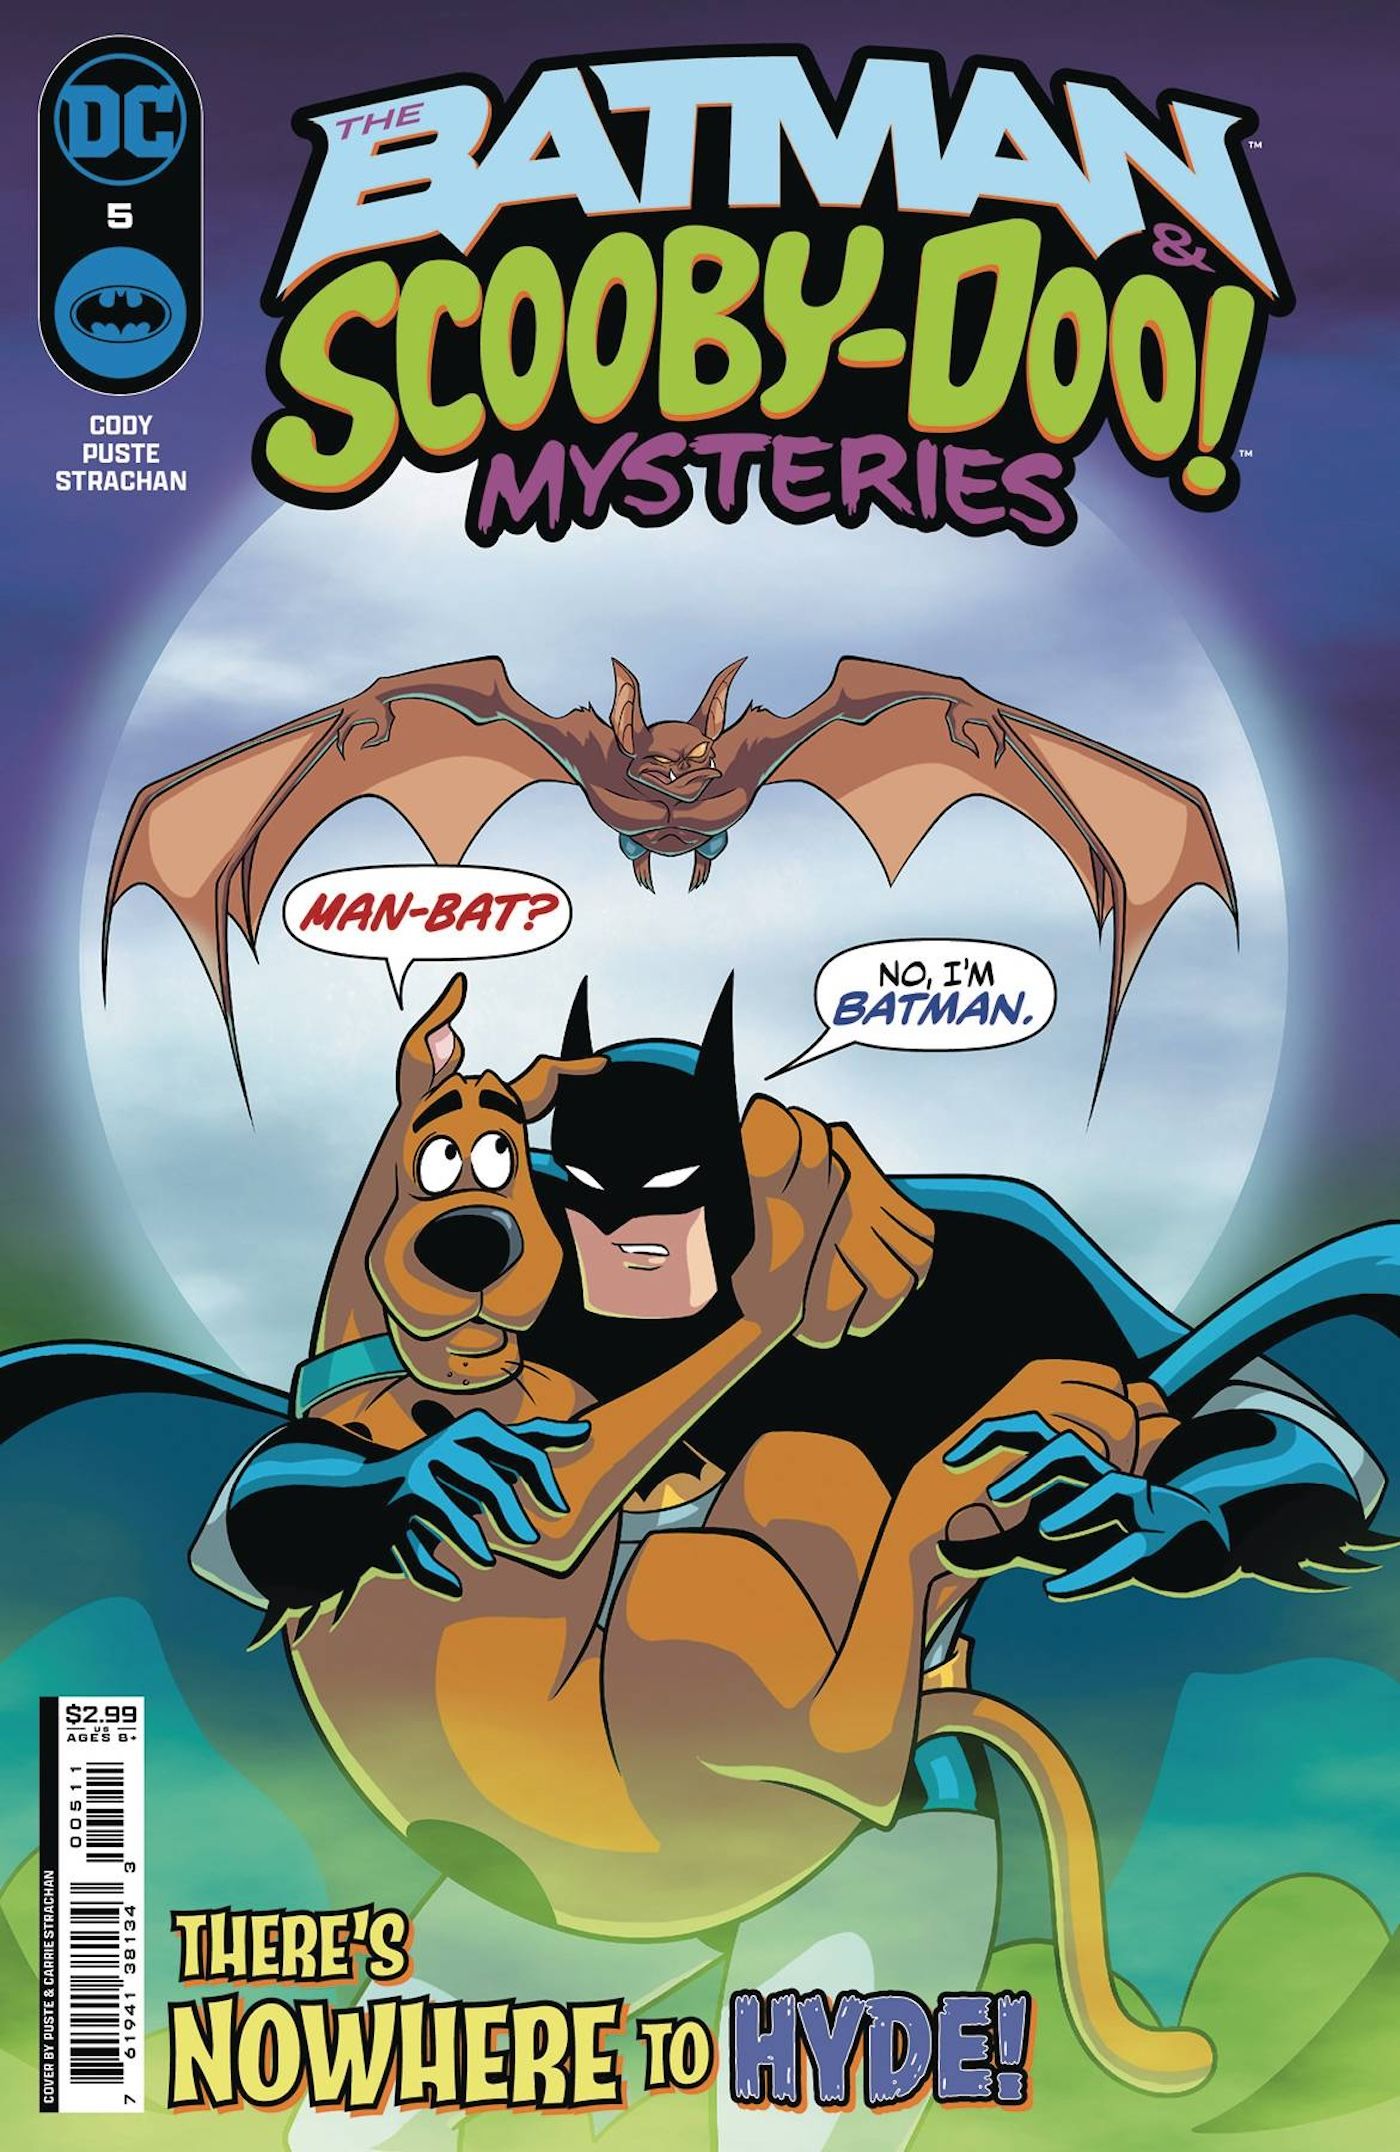 Capa principal de The Batman & Scooby Doo Mysteries 5: Batman segura Scooby enquanto Man-Bat os persegue.